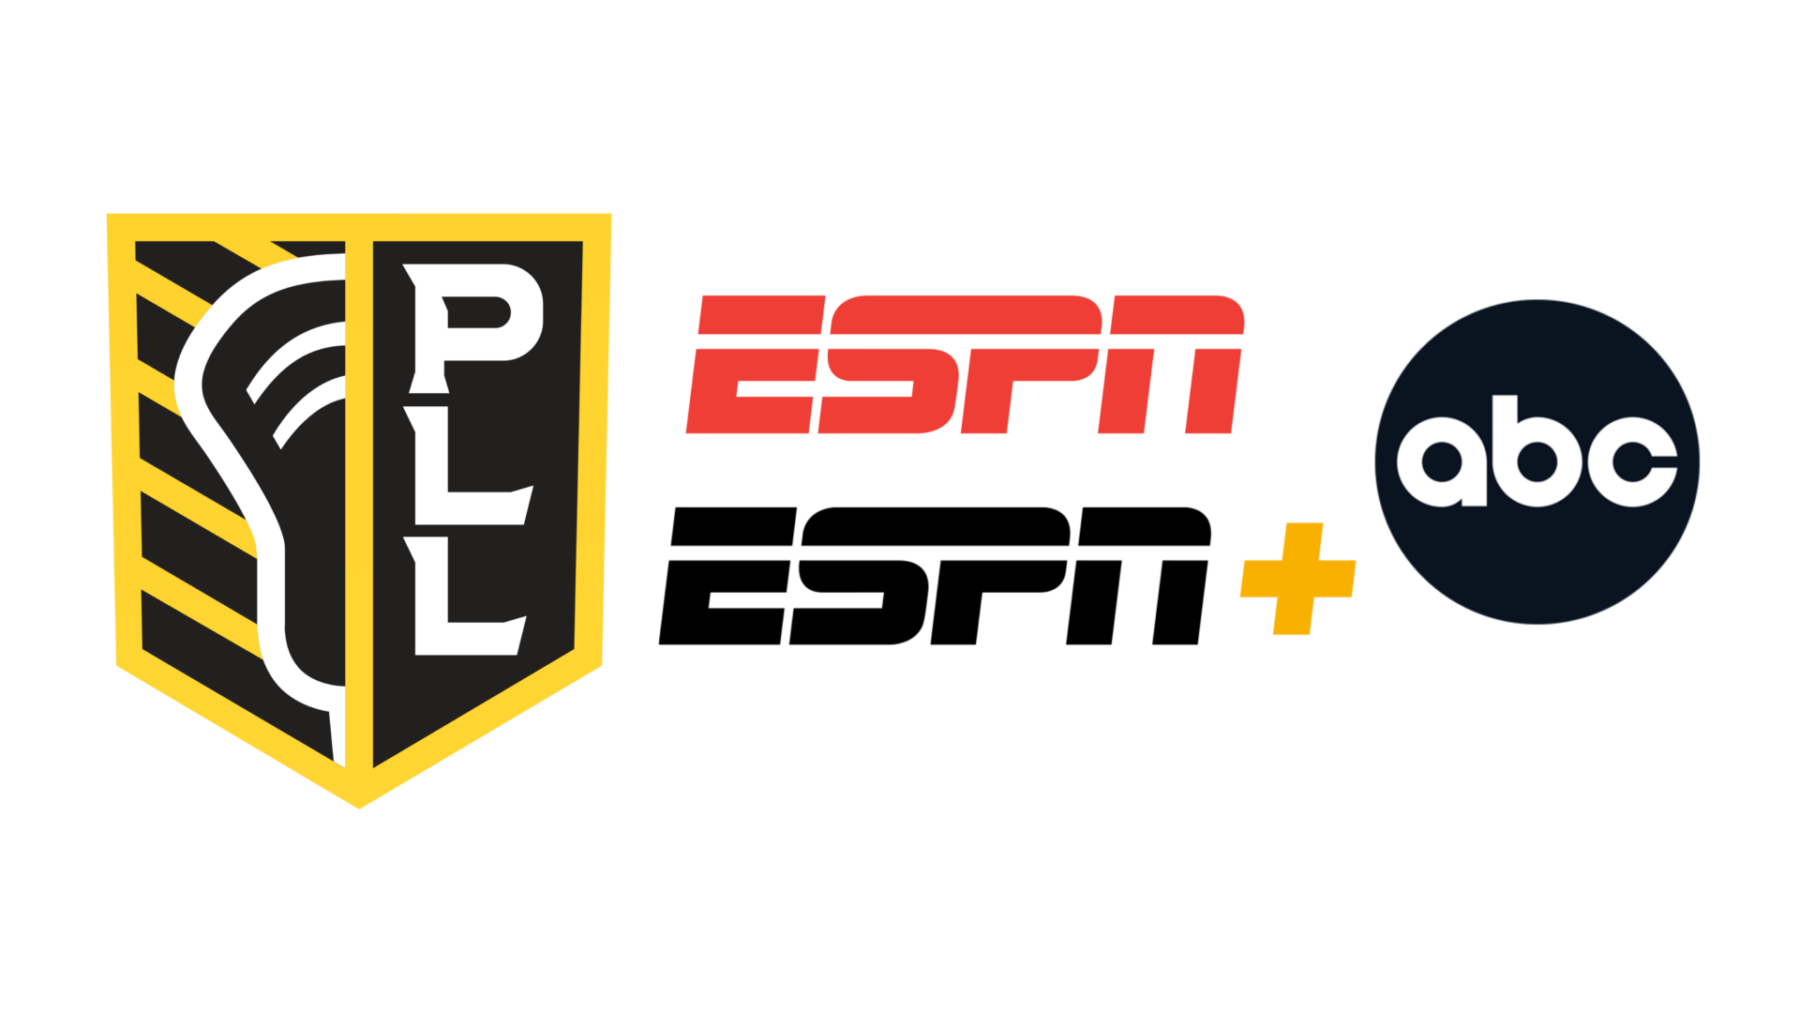 ESPN Platforms Set for Extensive Coverage of the 2023 Premier Lacrosse League Season